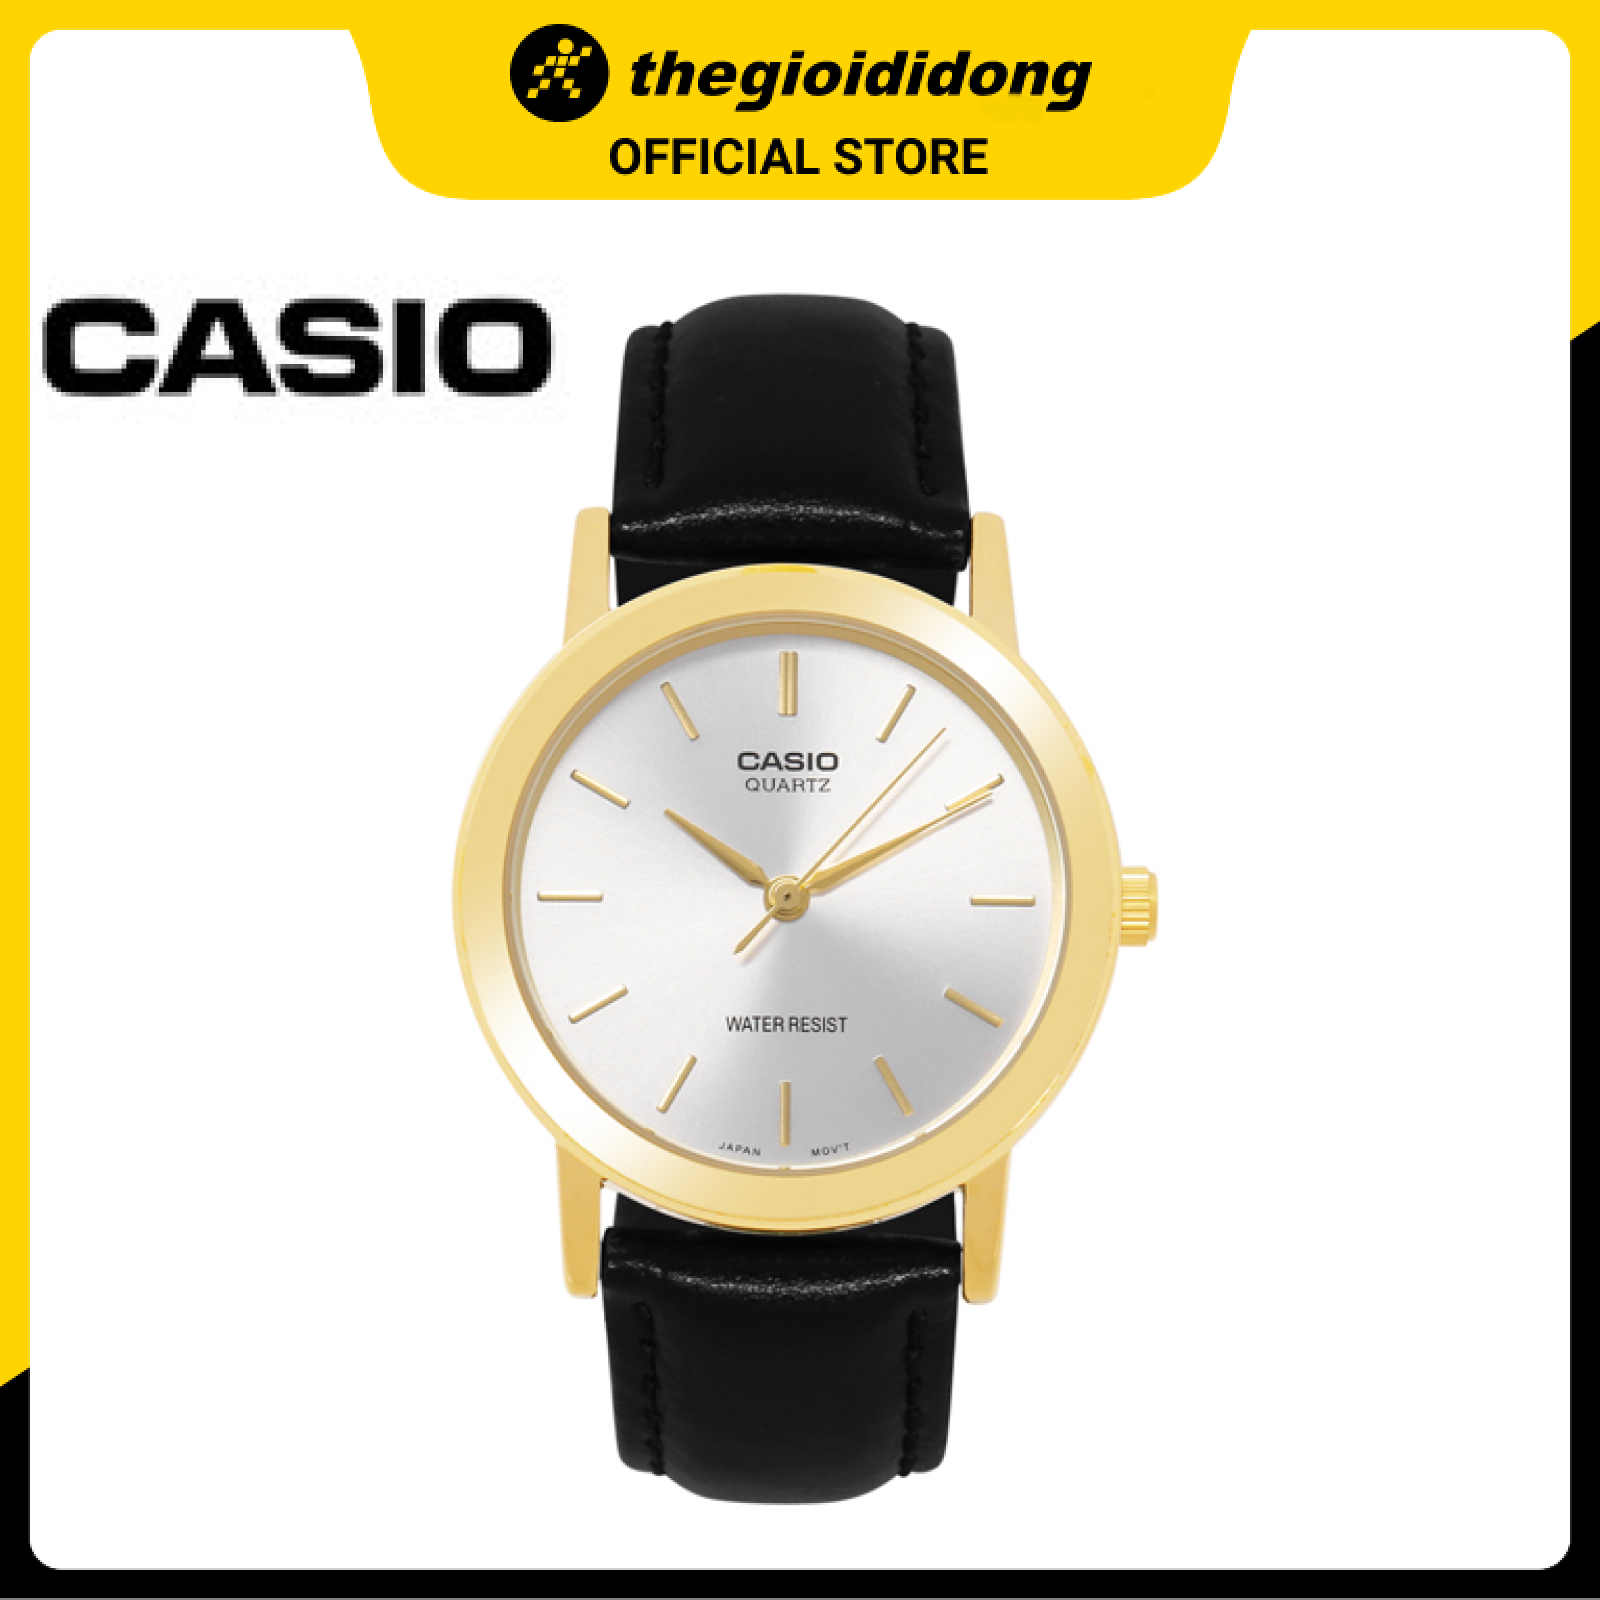 Khám phá đồng hồ Casio MTP-1095Q-7A